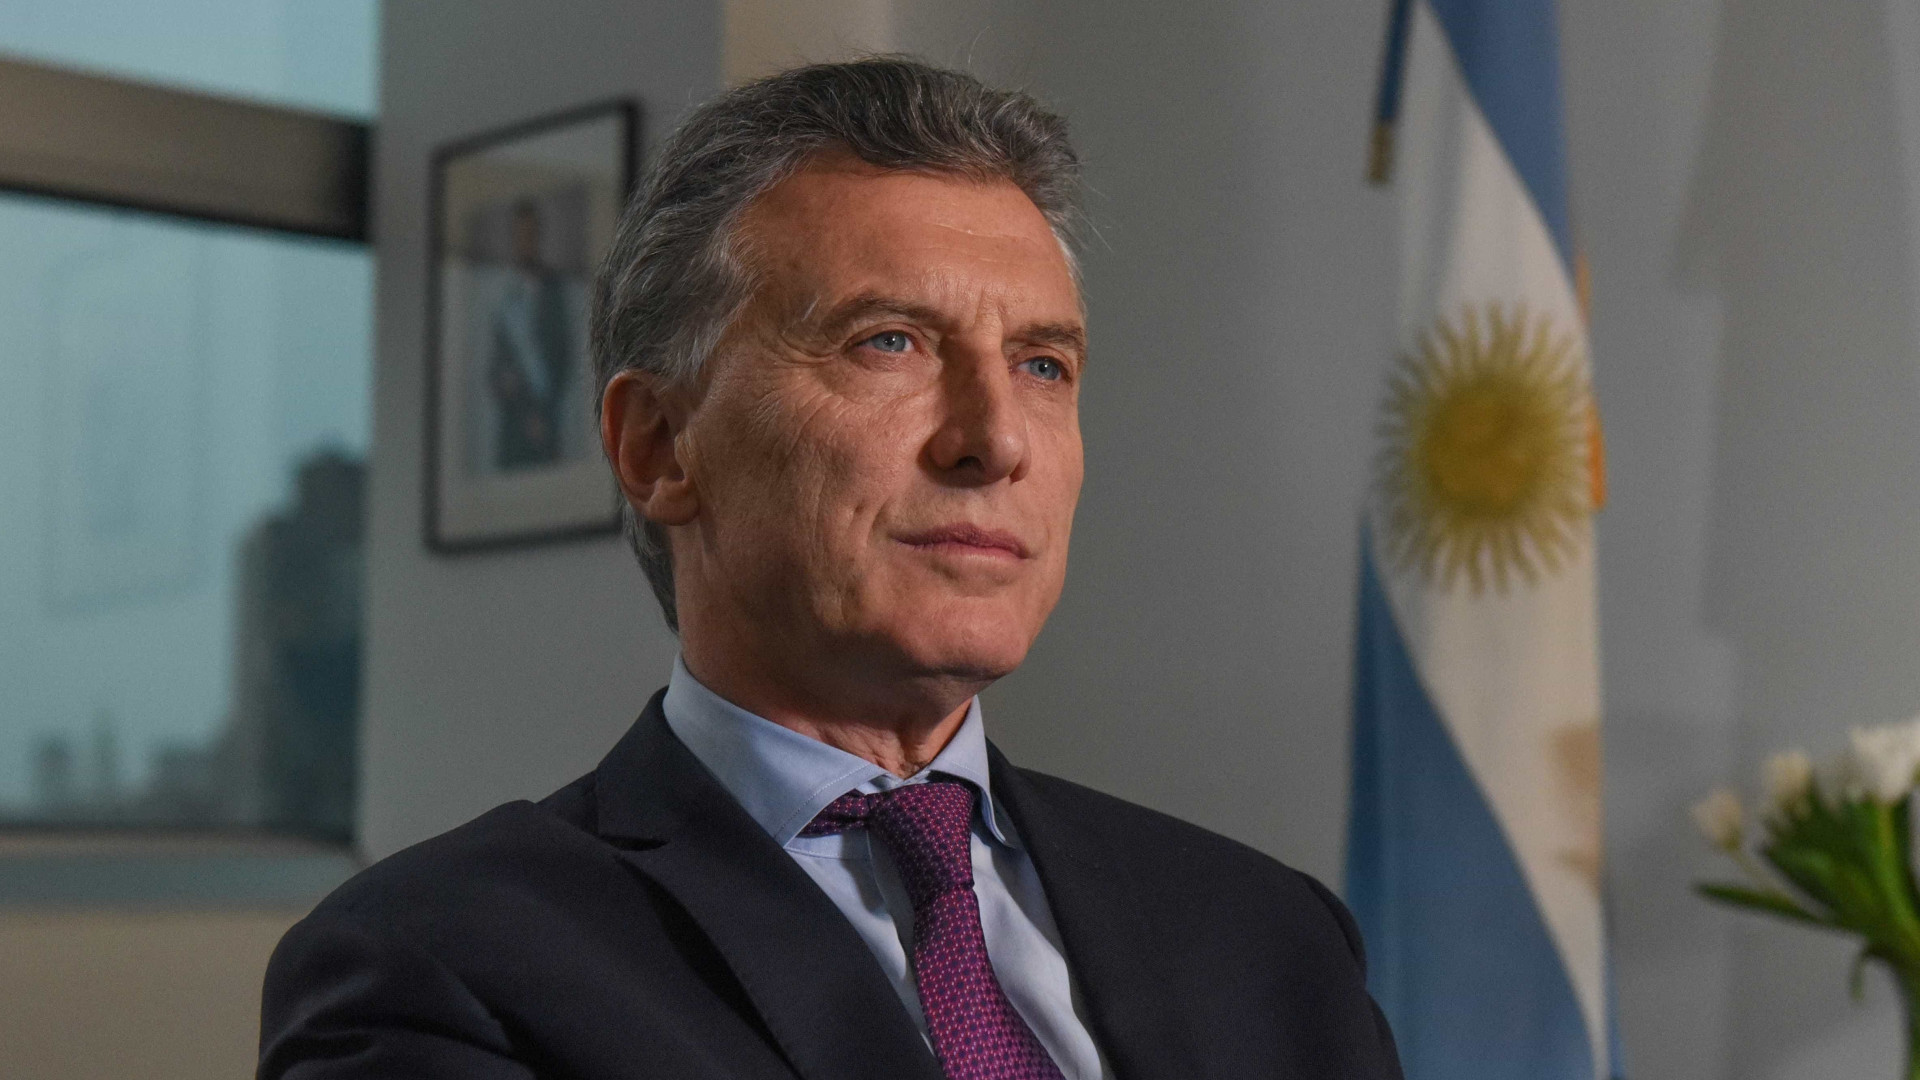 Economia fraca no Brasil pesou contra Macri, avalia governo argentino